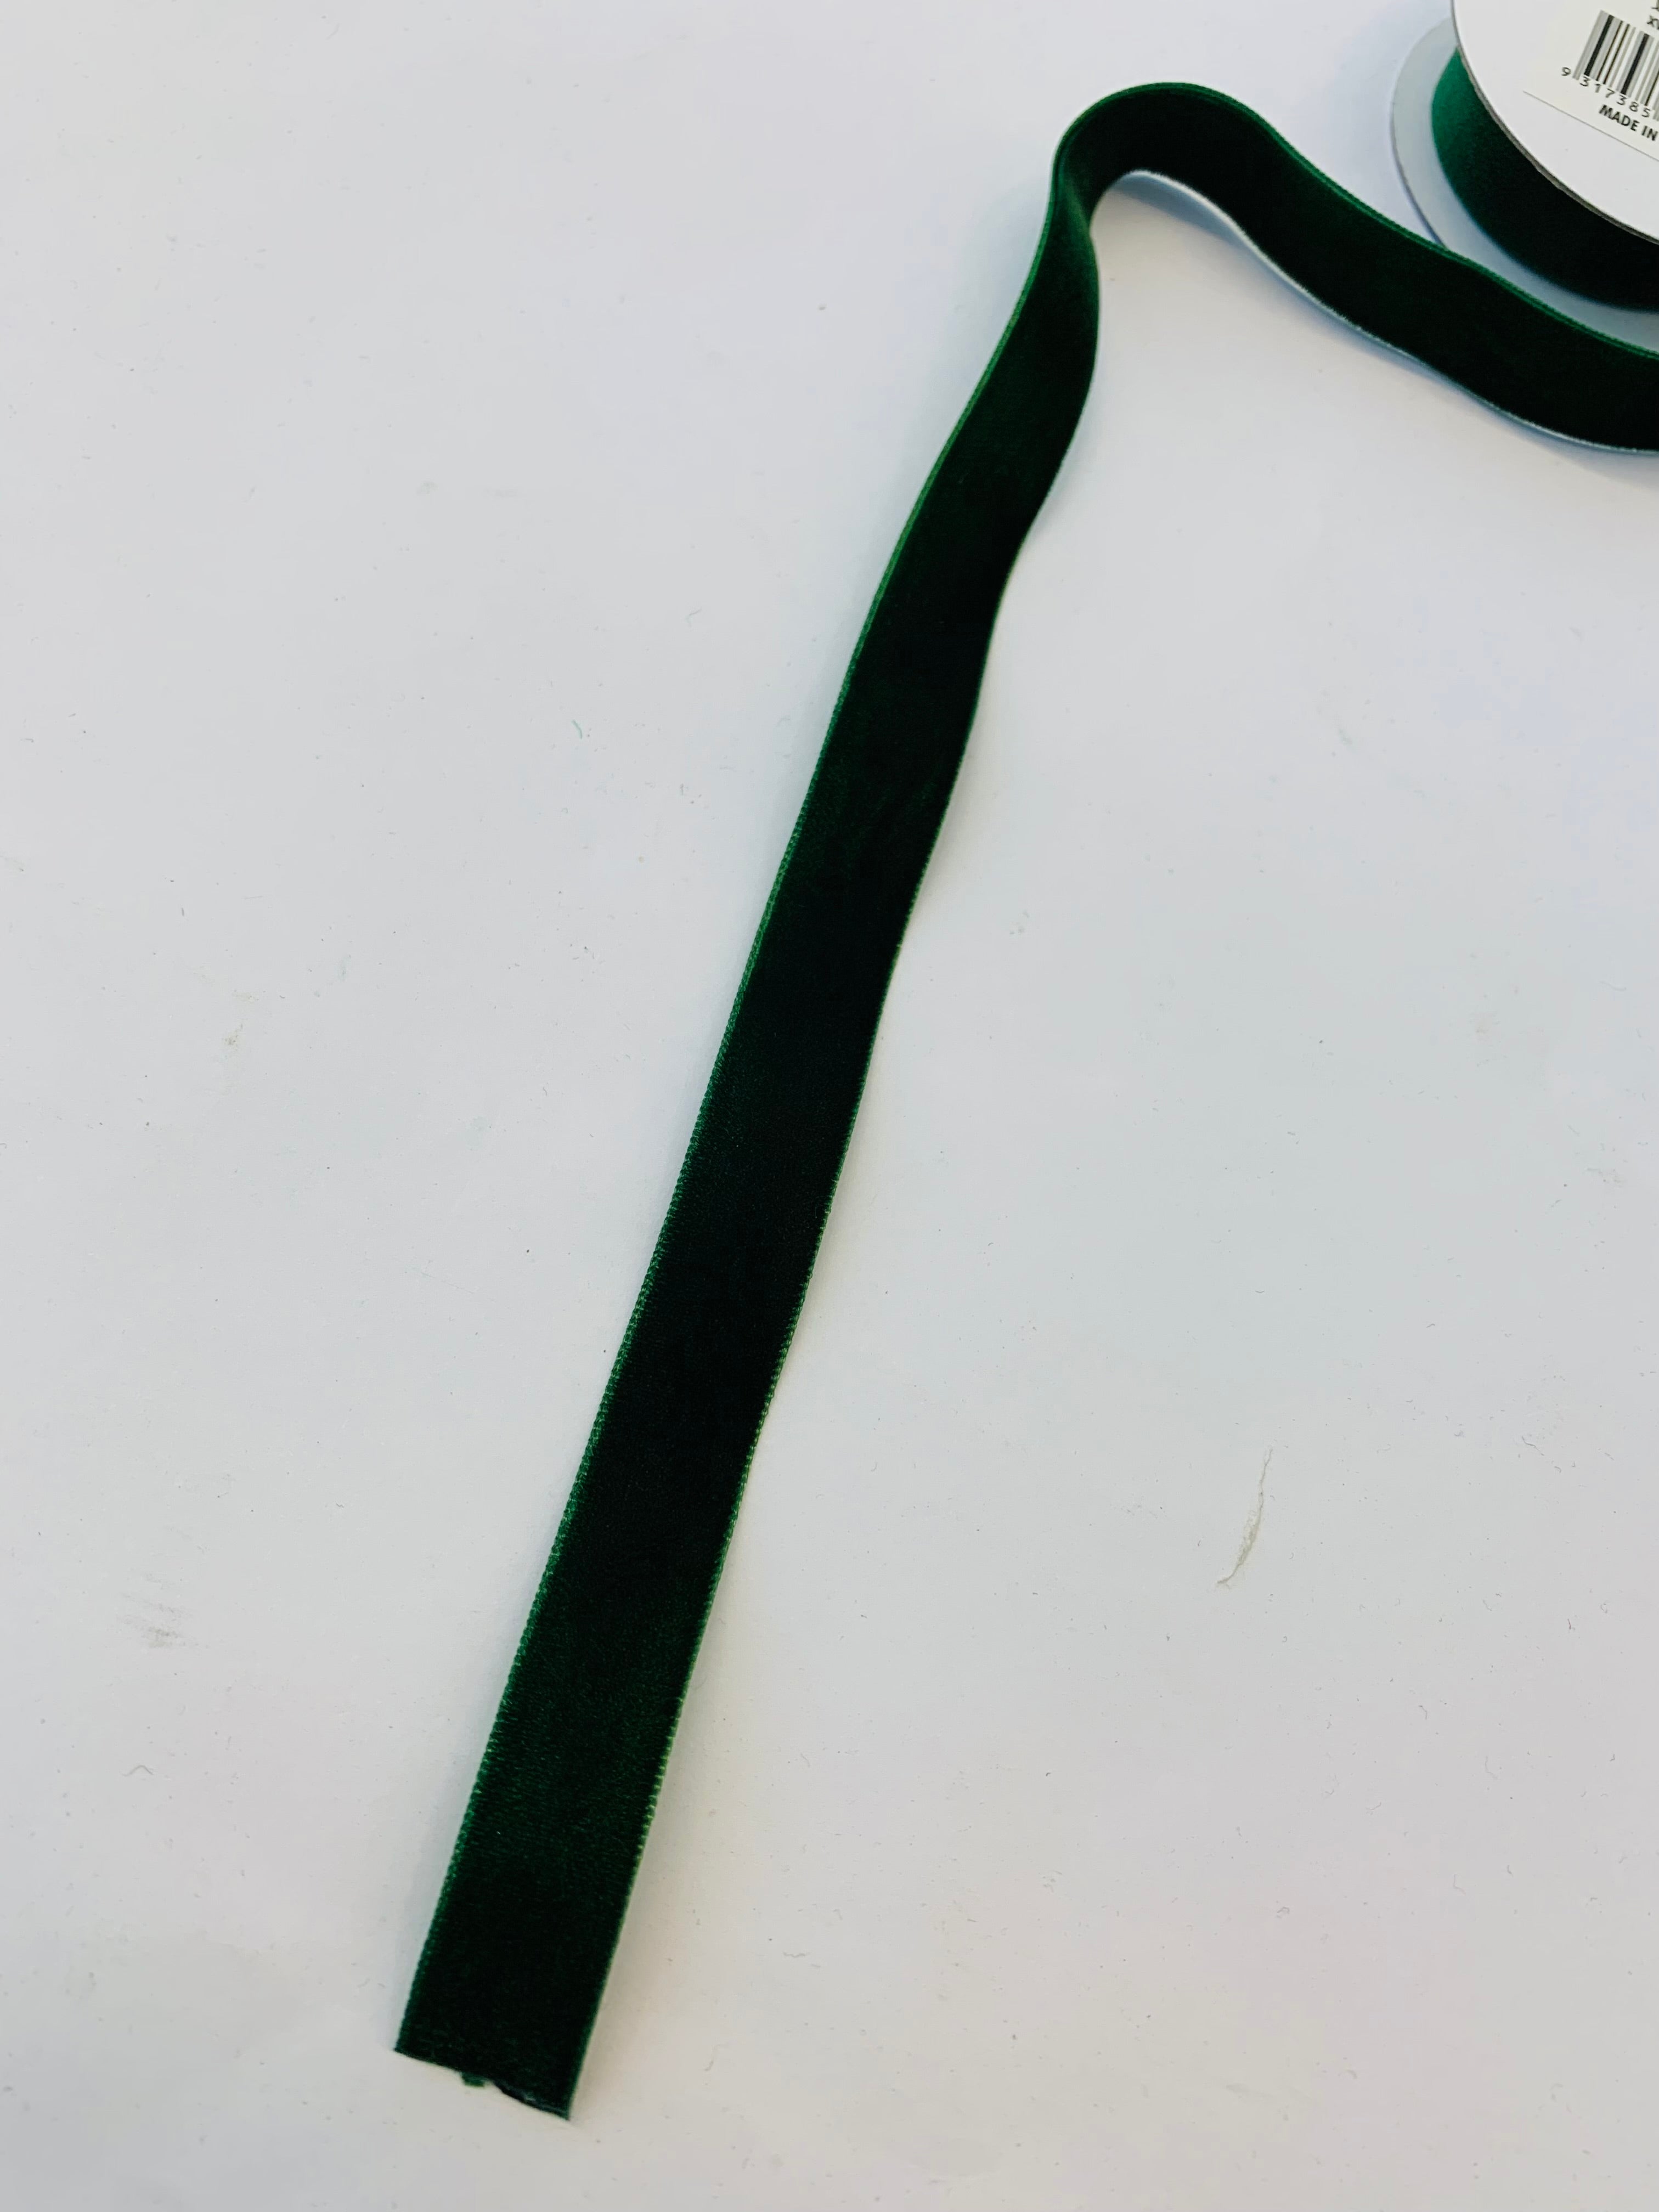 Velvet ribbon: 16mm x 2m